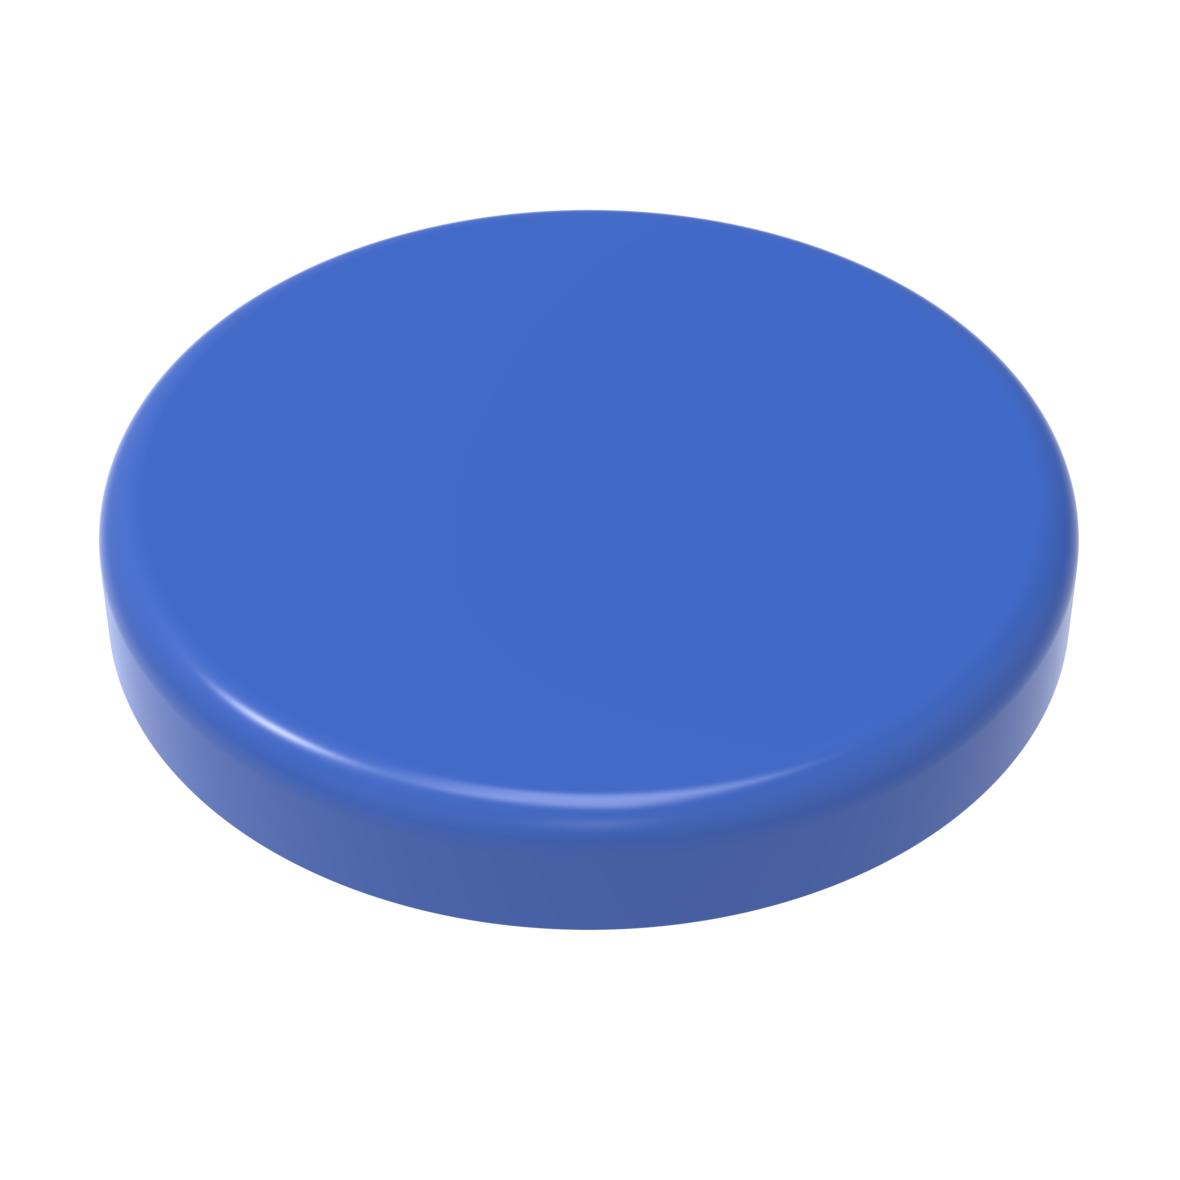 Magnet Rund, standard-blau PS-04012003-00000